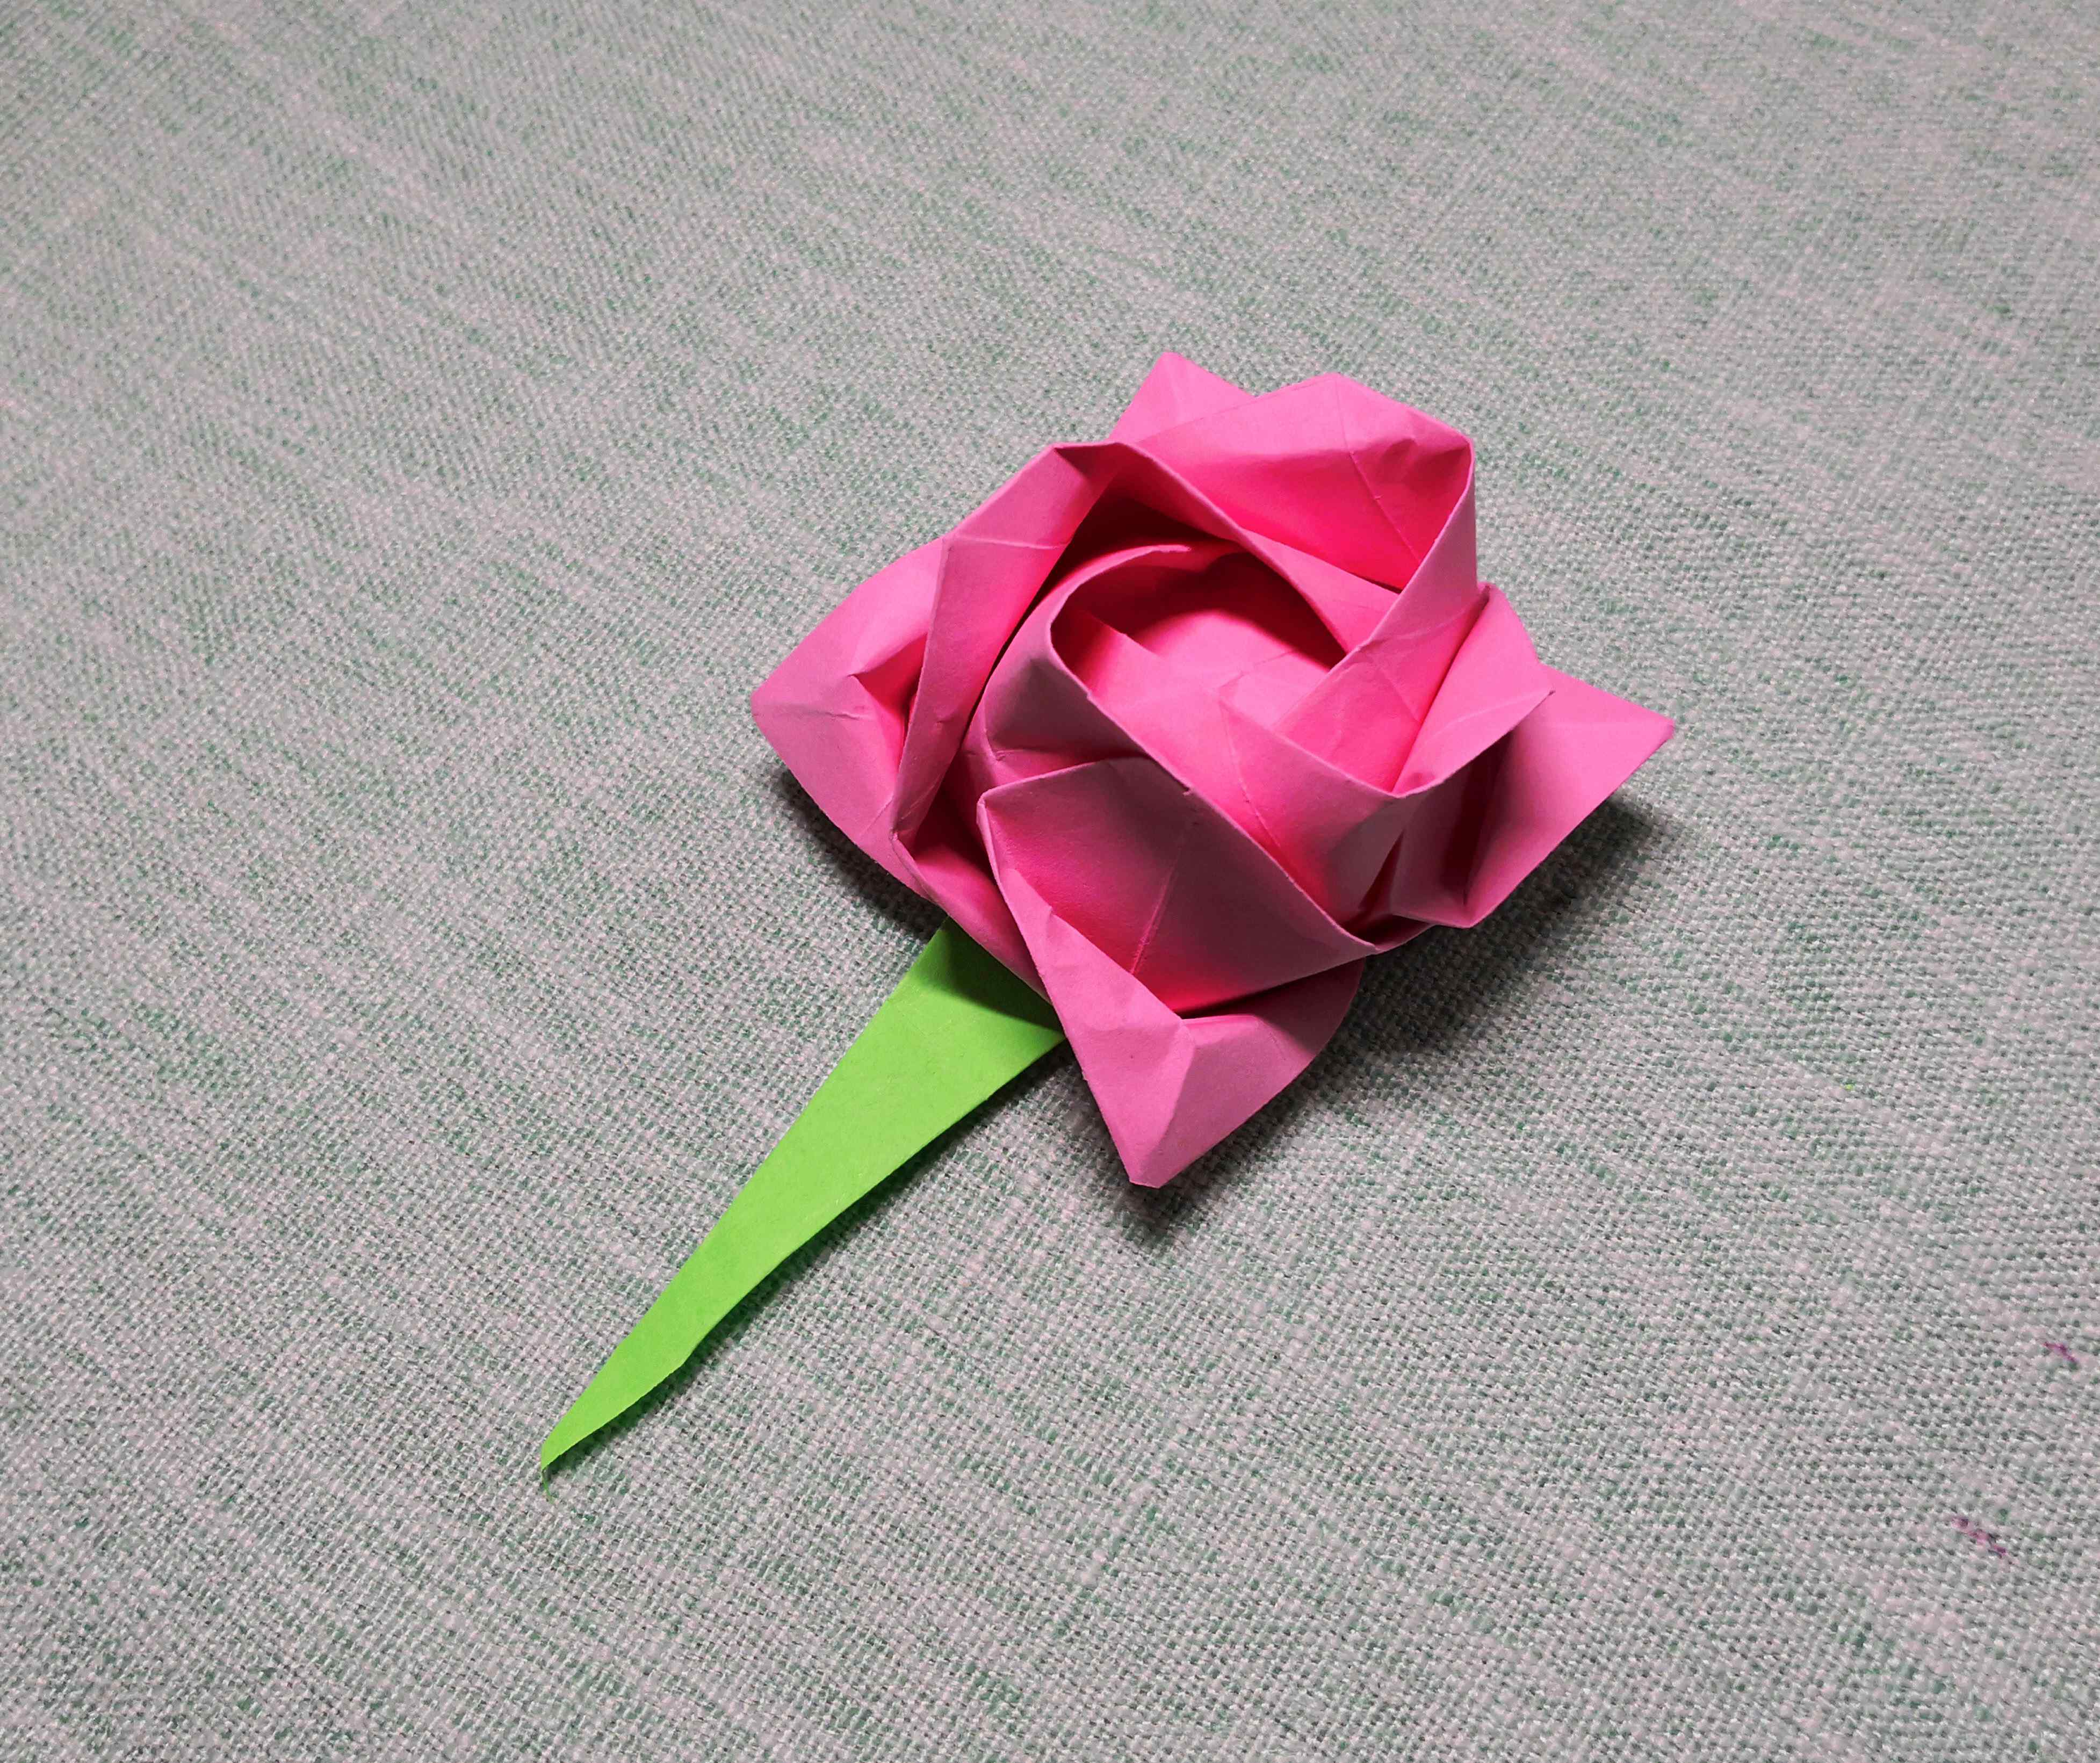 川崎玫瑰折法 川崎玫瑰超清详细折纸教程,适合新手的玫瑰花经典折法